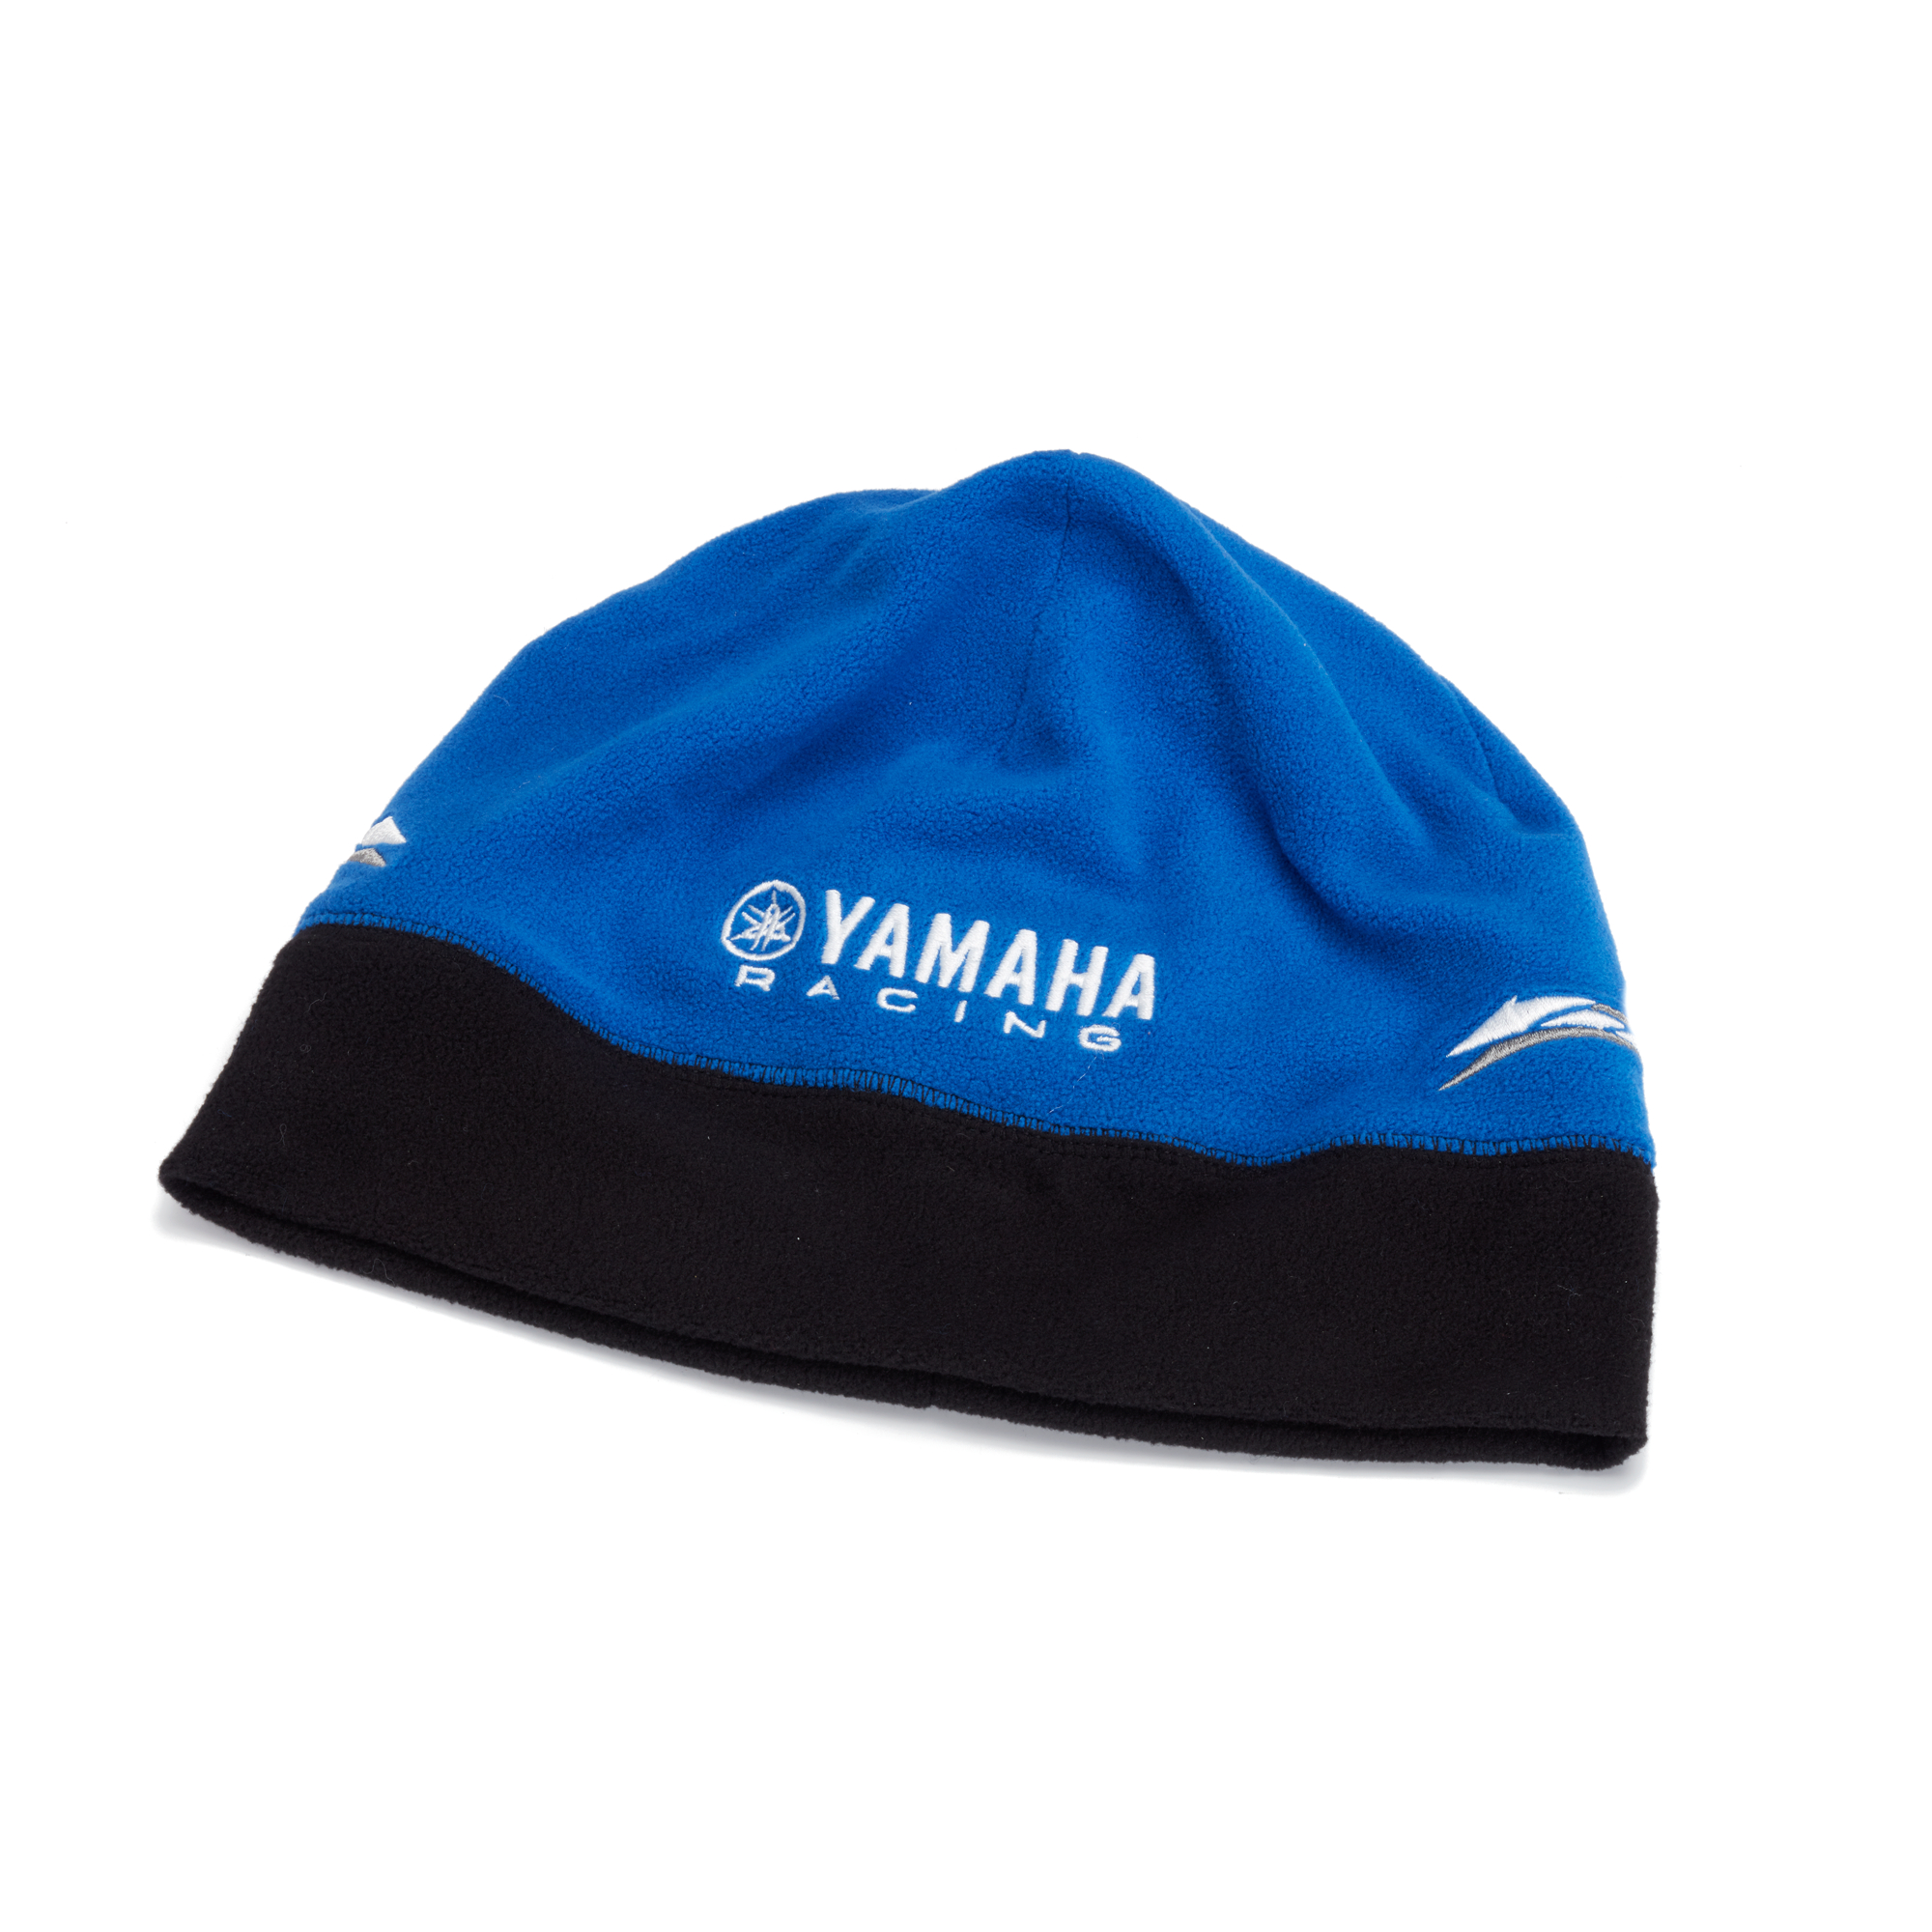 Paddock Blue Fleecemütze - Bekleidung & Merchandise - Yamaha Motor